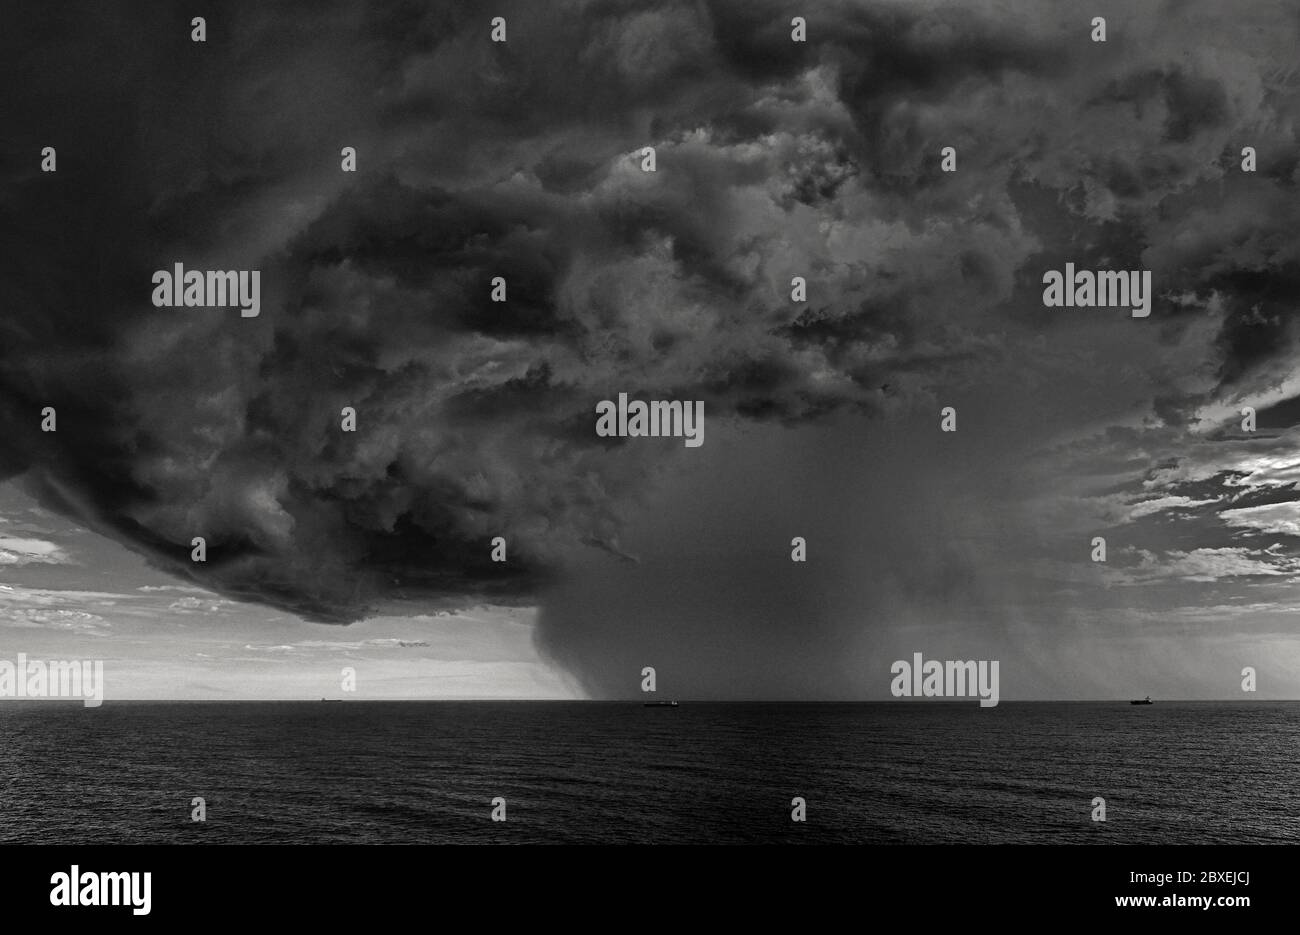 Off Shore rio grande 32.16 s 051.54 w, brasilien - 2014.02.02: Eine riesige Cumulonimbus-Wolke, die sich über dem südatlantik vor dem Himmel entwickelt Stockfoto